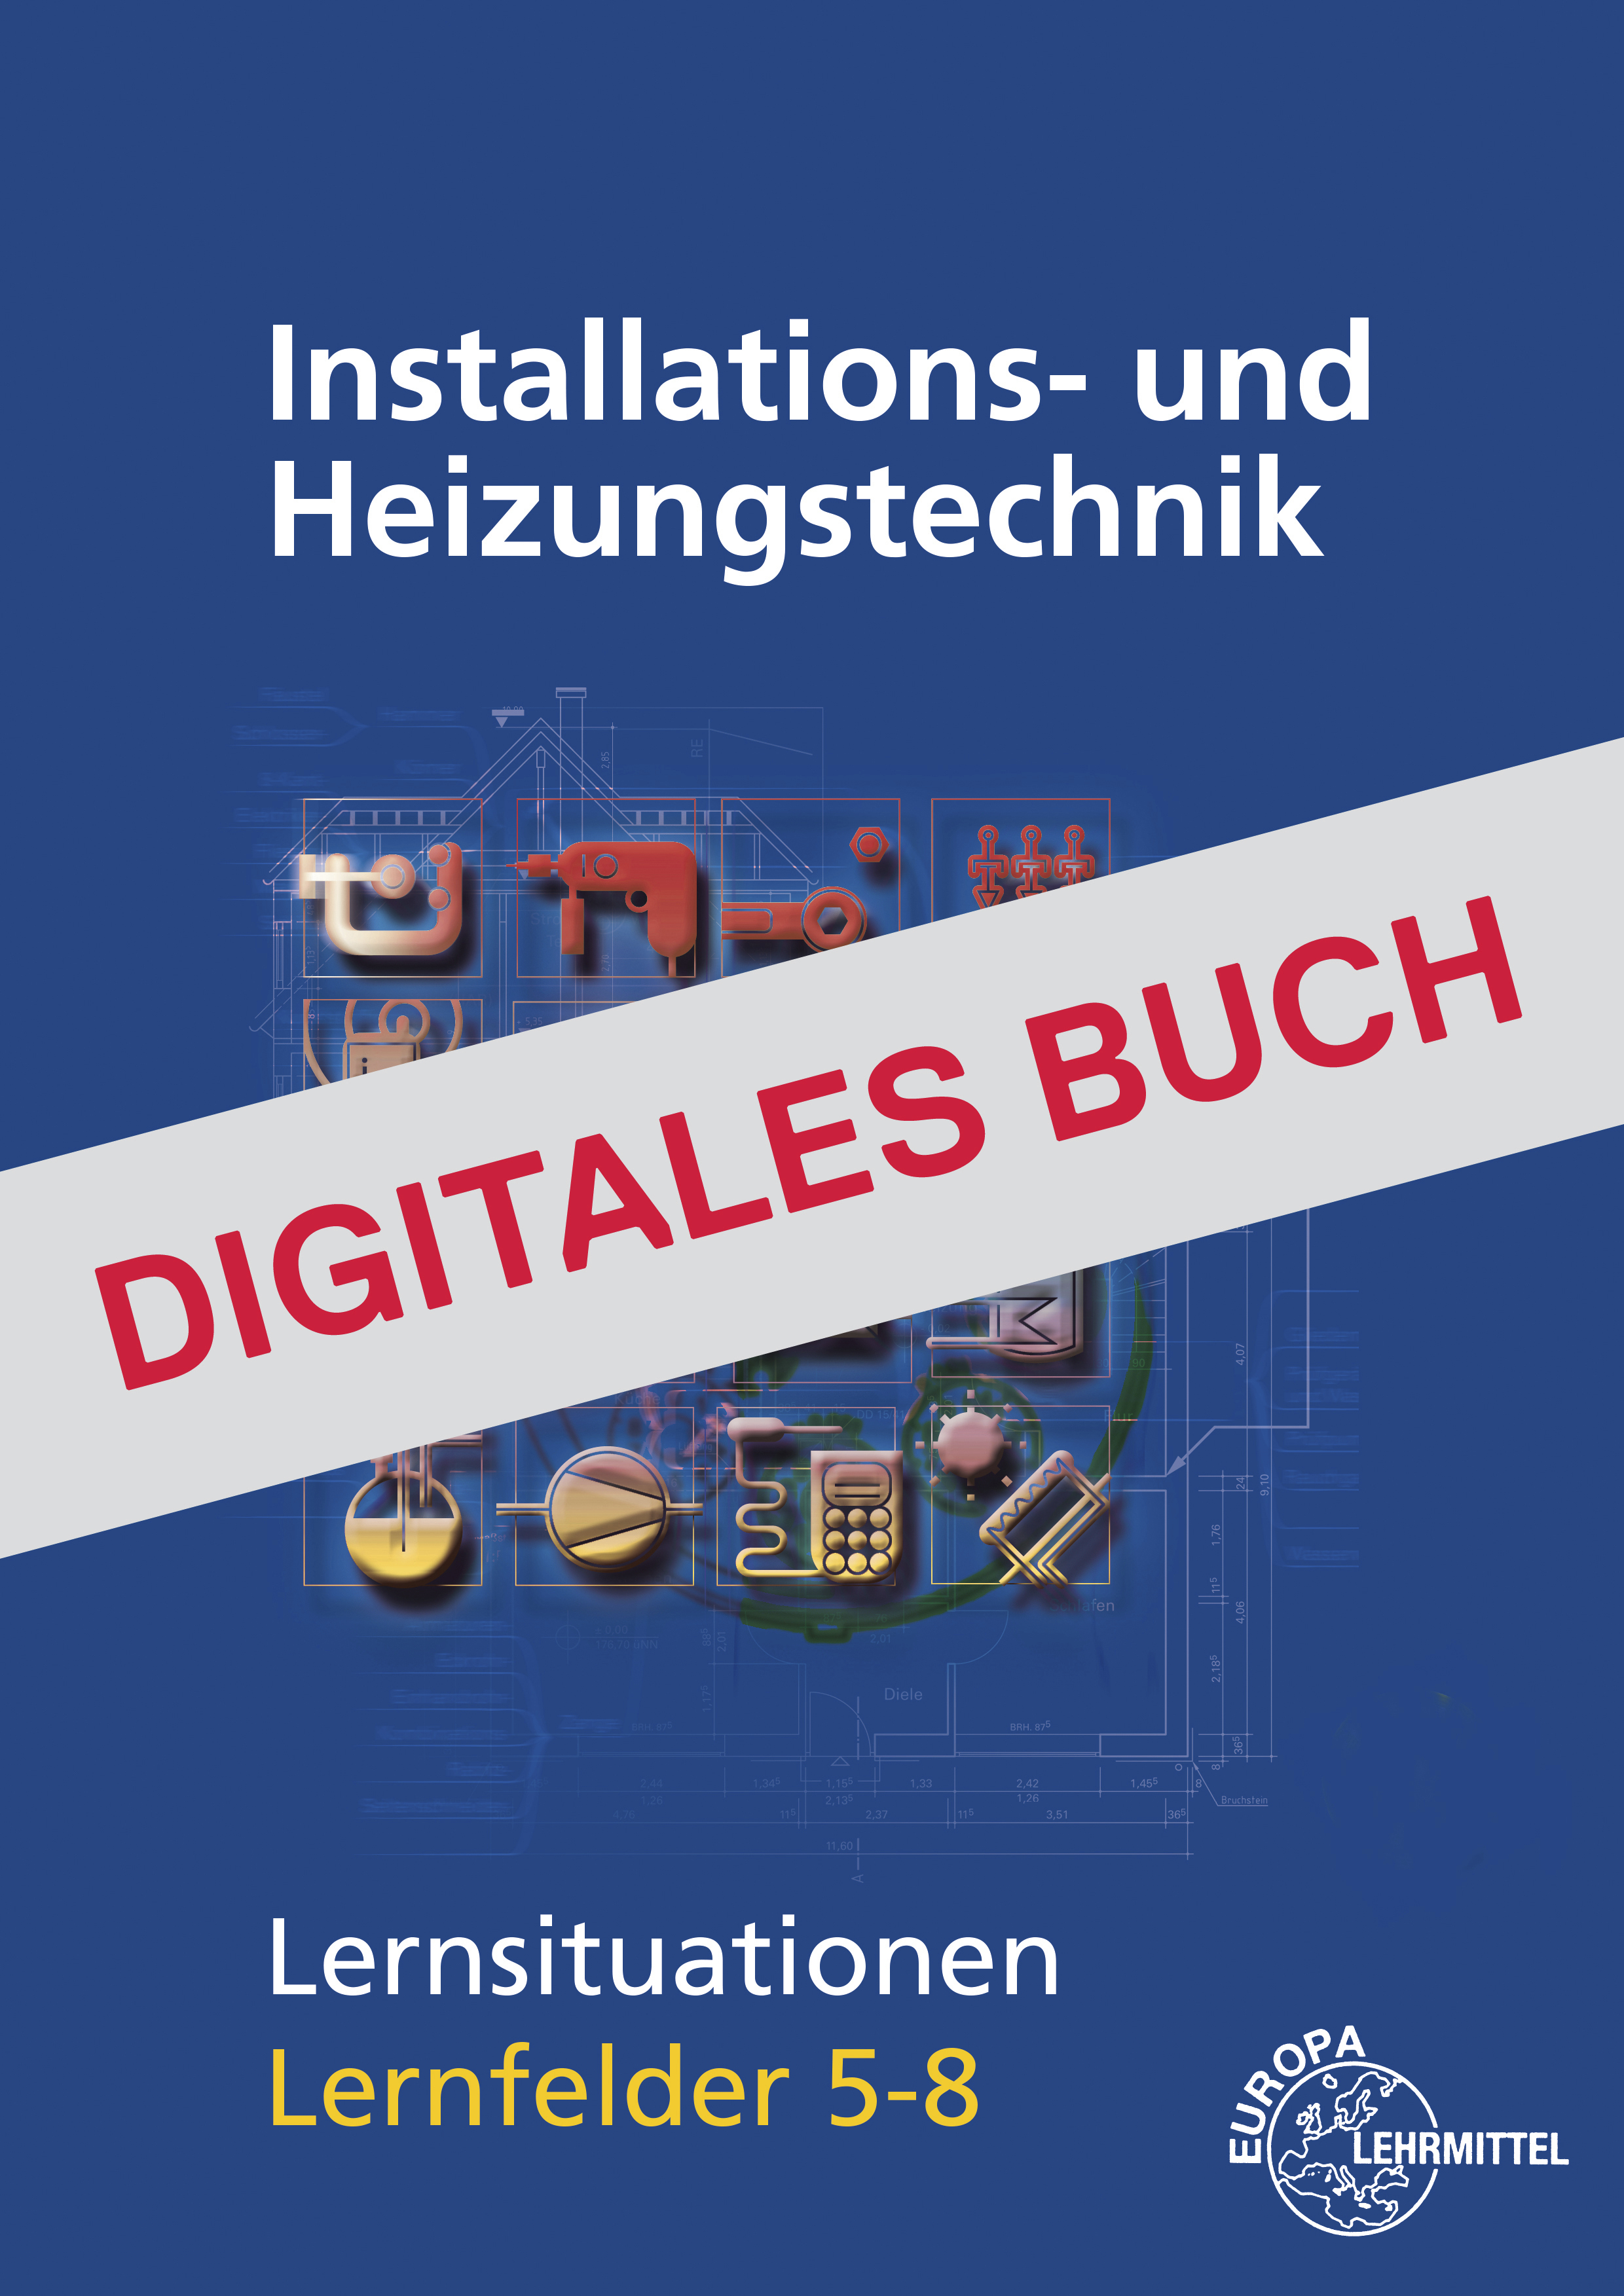 Installations- und Heizungstechnik Lernsituationen LF 5-8 - Digitales Buch